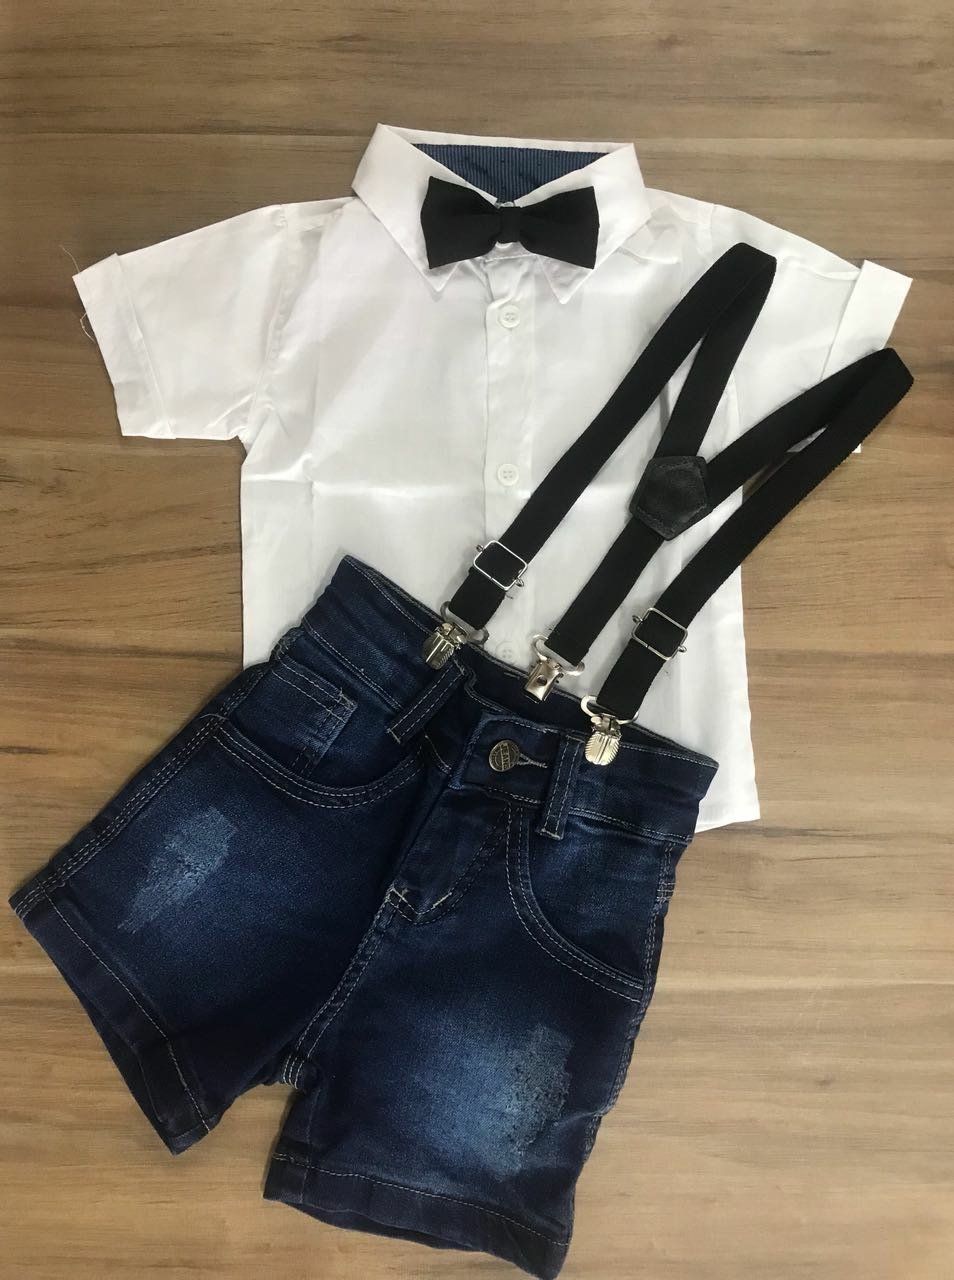 Bermuda Jeans com Suspensório e Camisa Social Branca com Gravata